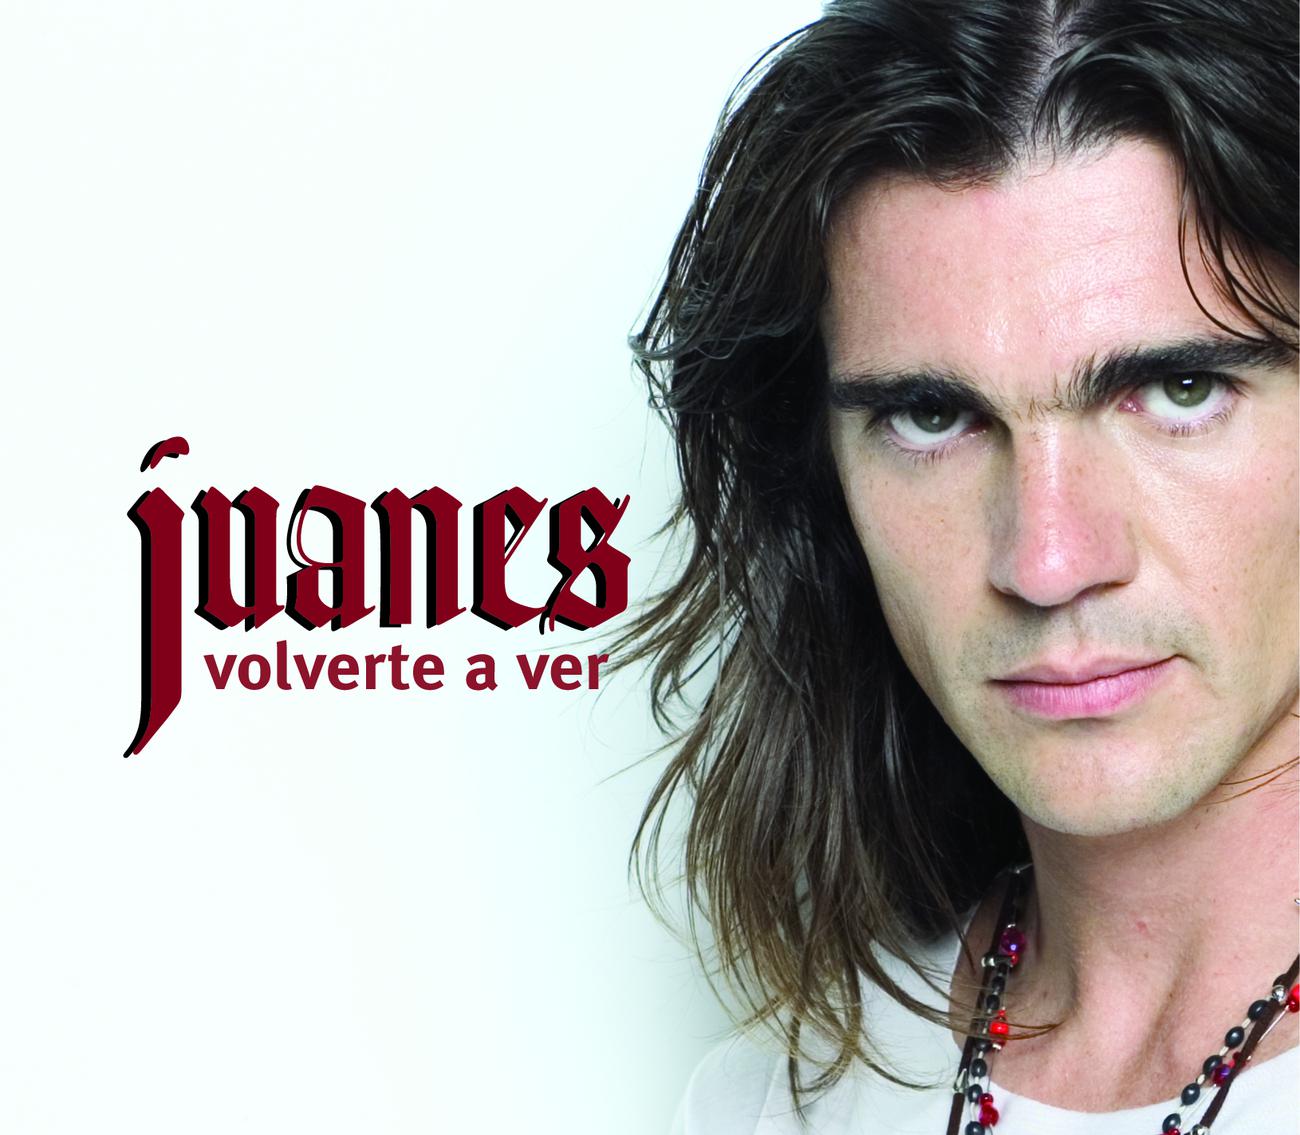 La camisa negra хуанес где послушать. Хуанес ла Камиса. La camisa negra Хуанес. Juanes обложка. Хуанес длинные волосы.